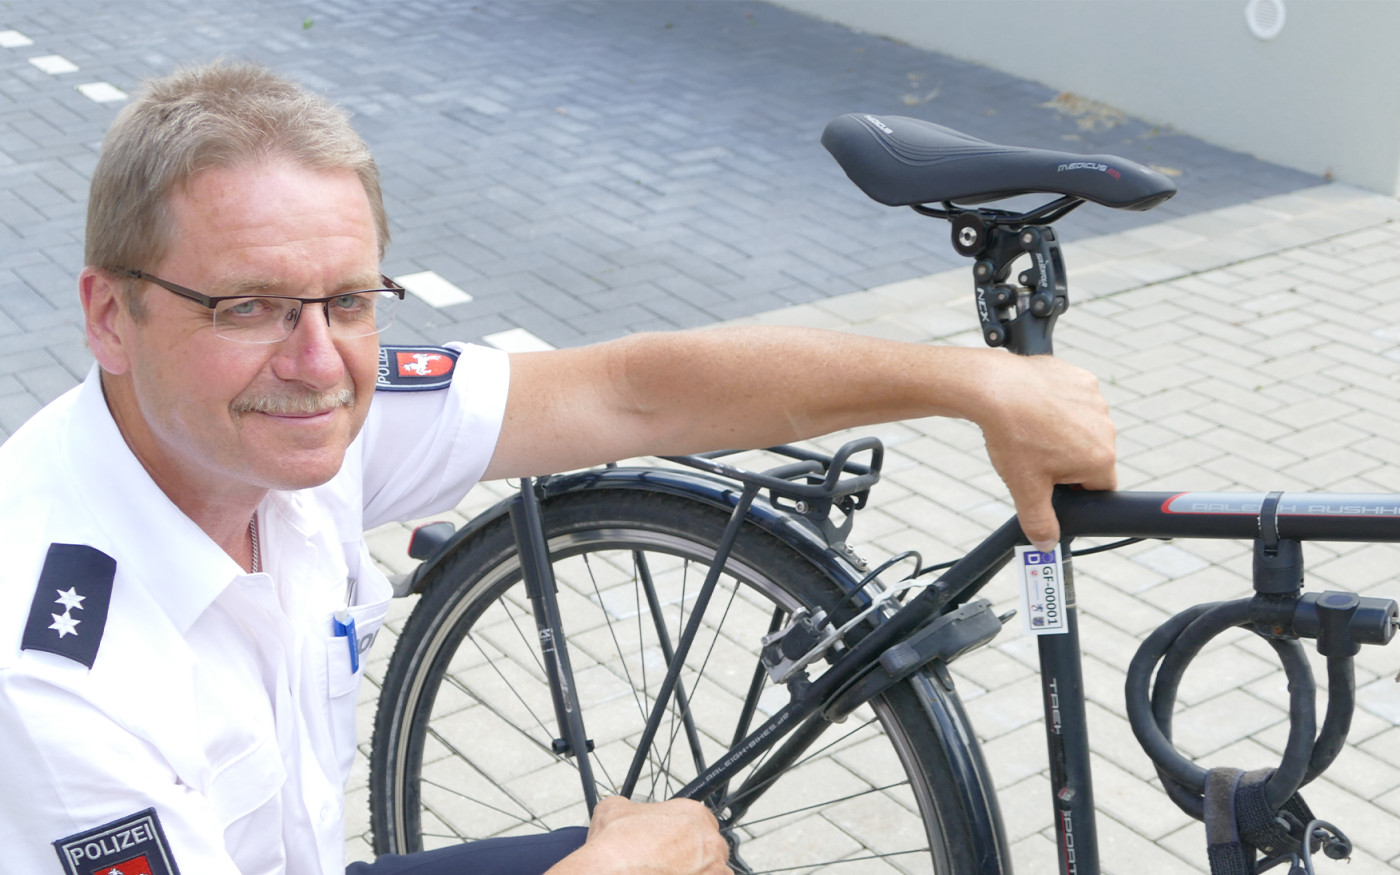 Kein Fahrrad ohne Kennzeichen: Aufkleber-Aktion für mehr Diebstahlschutz in Gifhorn